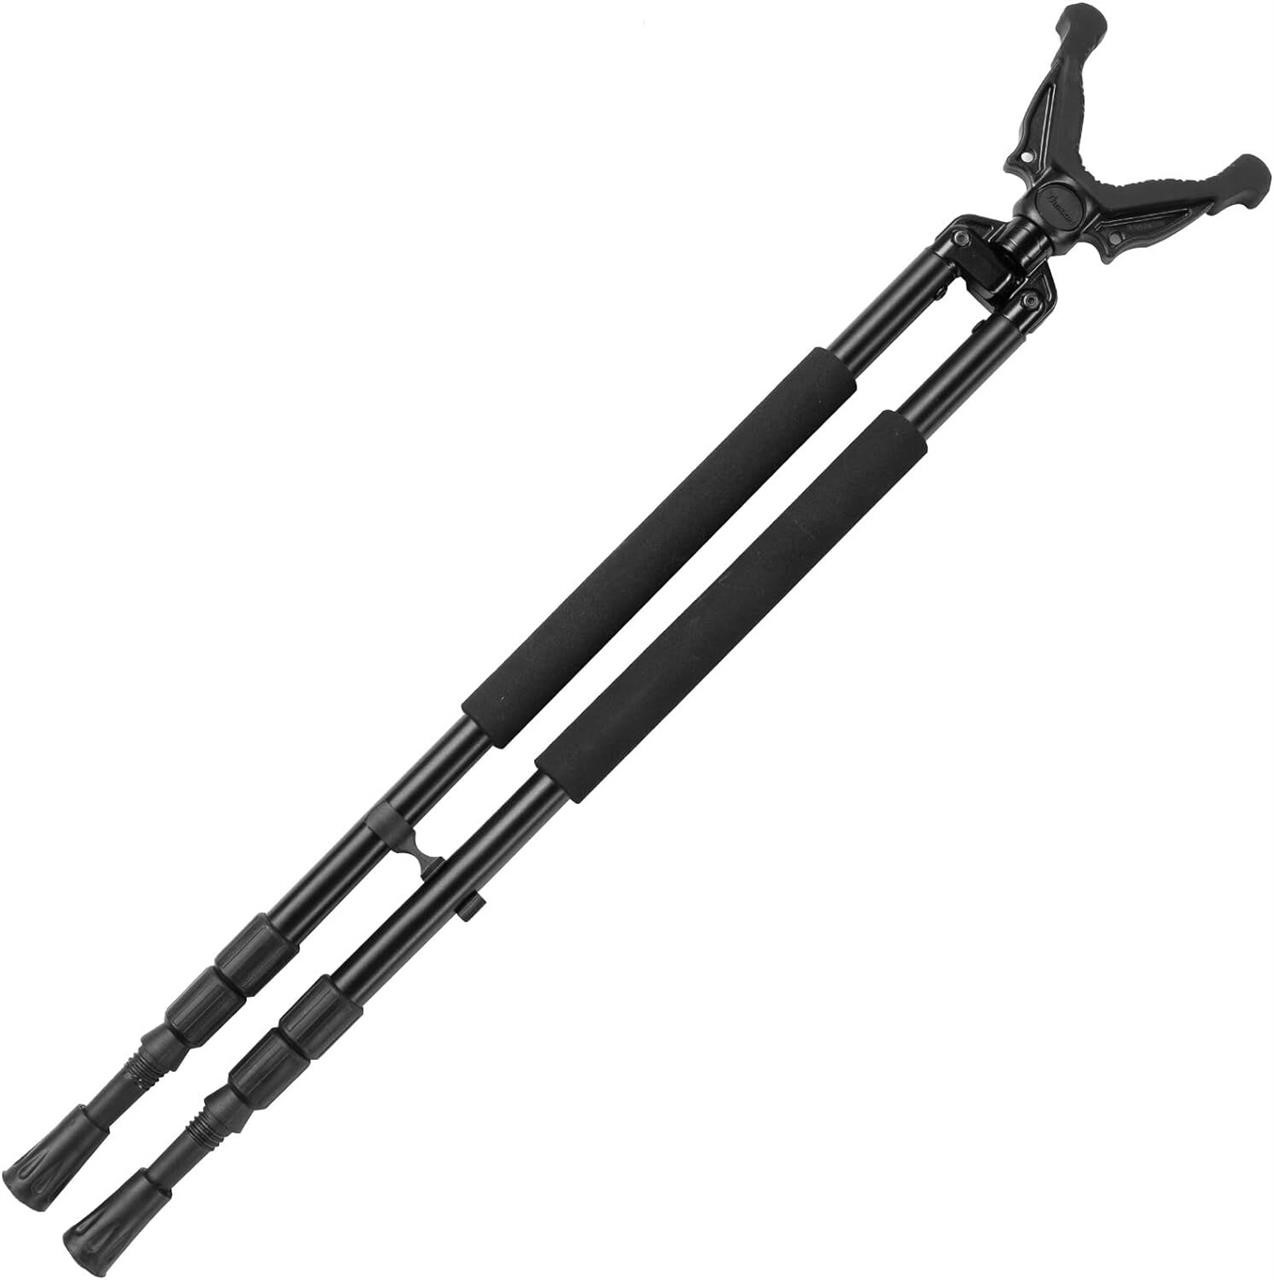 Trakiom Bipod Shooting Sticks 30-61 Black